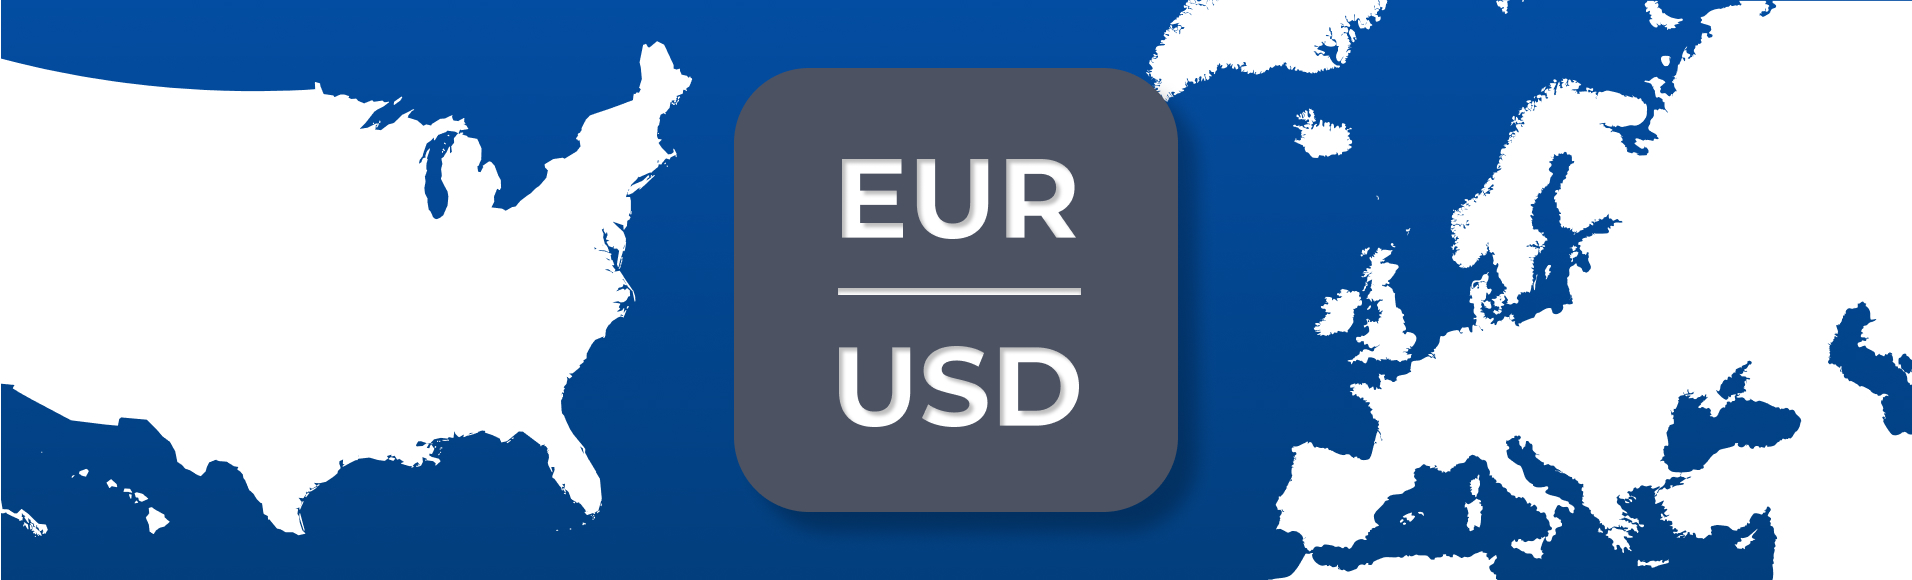 Các cặp tiền tệ chính. Phần 1: Châu Âu và Châu Mỹ